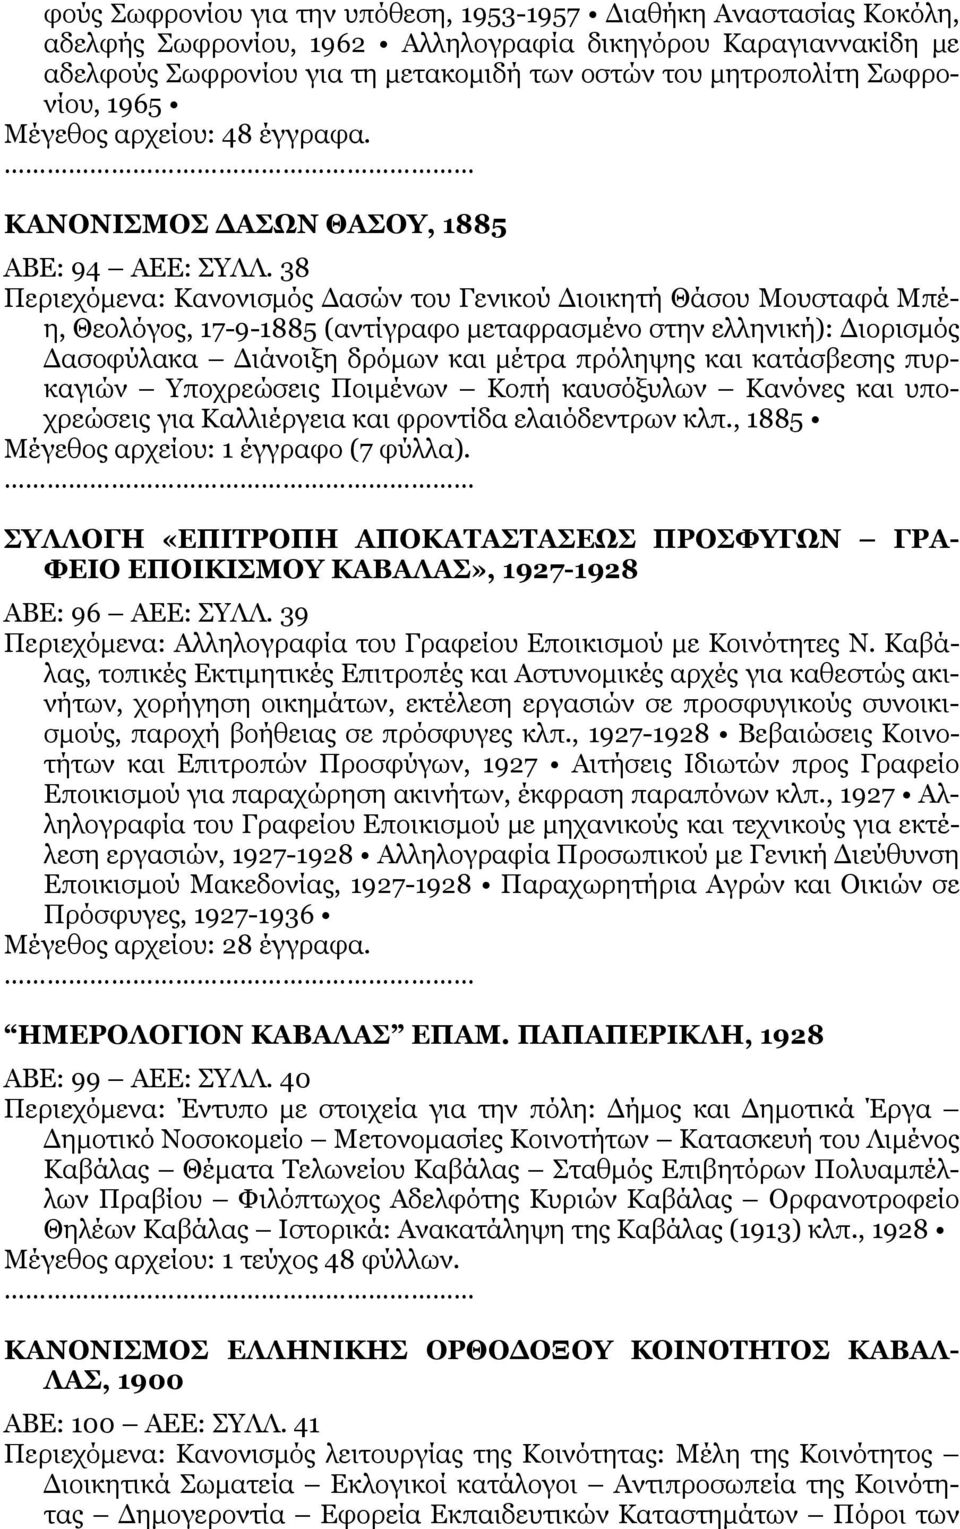 38 Περιεχόμενα: Κανονισμός Δασών του Γενικού Διοικητή Θάσου Μουσταφά Μπέη, Θεολόγος, 17-9-1885 (αντίγραφο μεταφρασμένο στην ελληνική): Διορισμός Δασοφύλακα Διάνοιξη δρόμων και μέτρα πρόληψης και